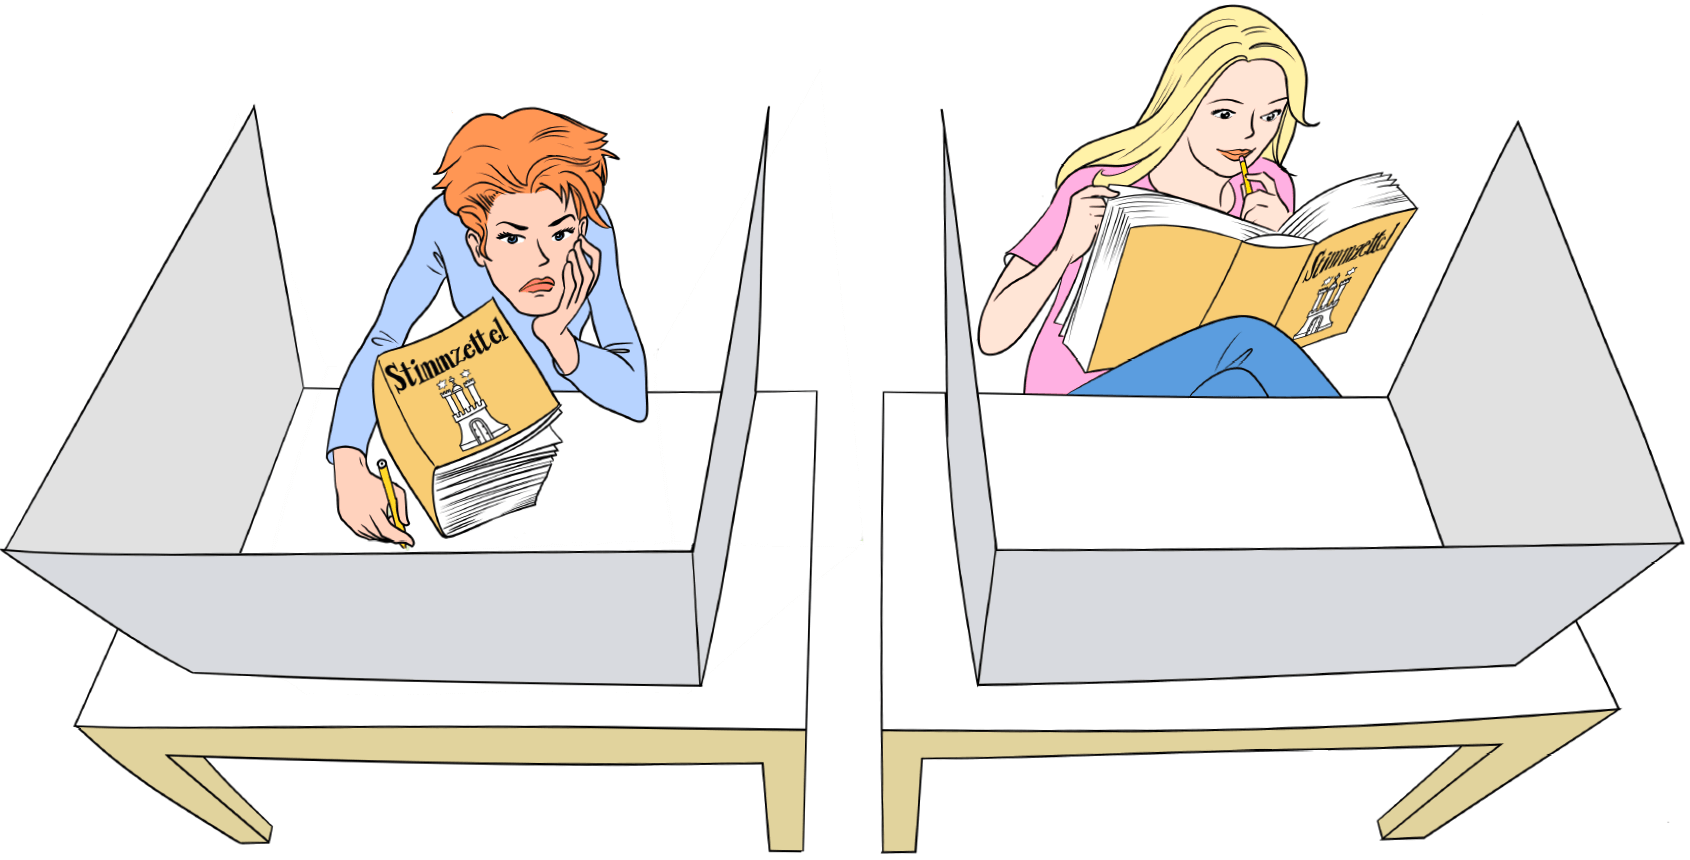 Illustration (Karikatur): Blick in zwei Wahlkabinen von oben. In der linken Kabine sitzt eine Frau, die ihren Kopf auf die eine Hand gestützt hat, in der anderen hält sie einen Stift. Sie sitzt in sich zusammengesunken und schaut resigniert. Vor ihr liegt ein übertrieben dick dargestelltes Buch mit der Aufschrift „Stimmzettel“. Das Buch ist zugeklappt. In der rechten Wahlkabine sitzt eine zweite Frau. Sie hat sich entspannt zurückgelehnt und liest konzentriert in dem gleichen seitenstarken „Stimmzettelbuch“.